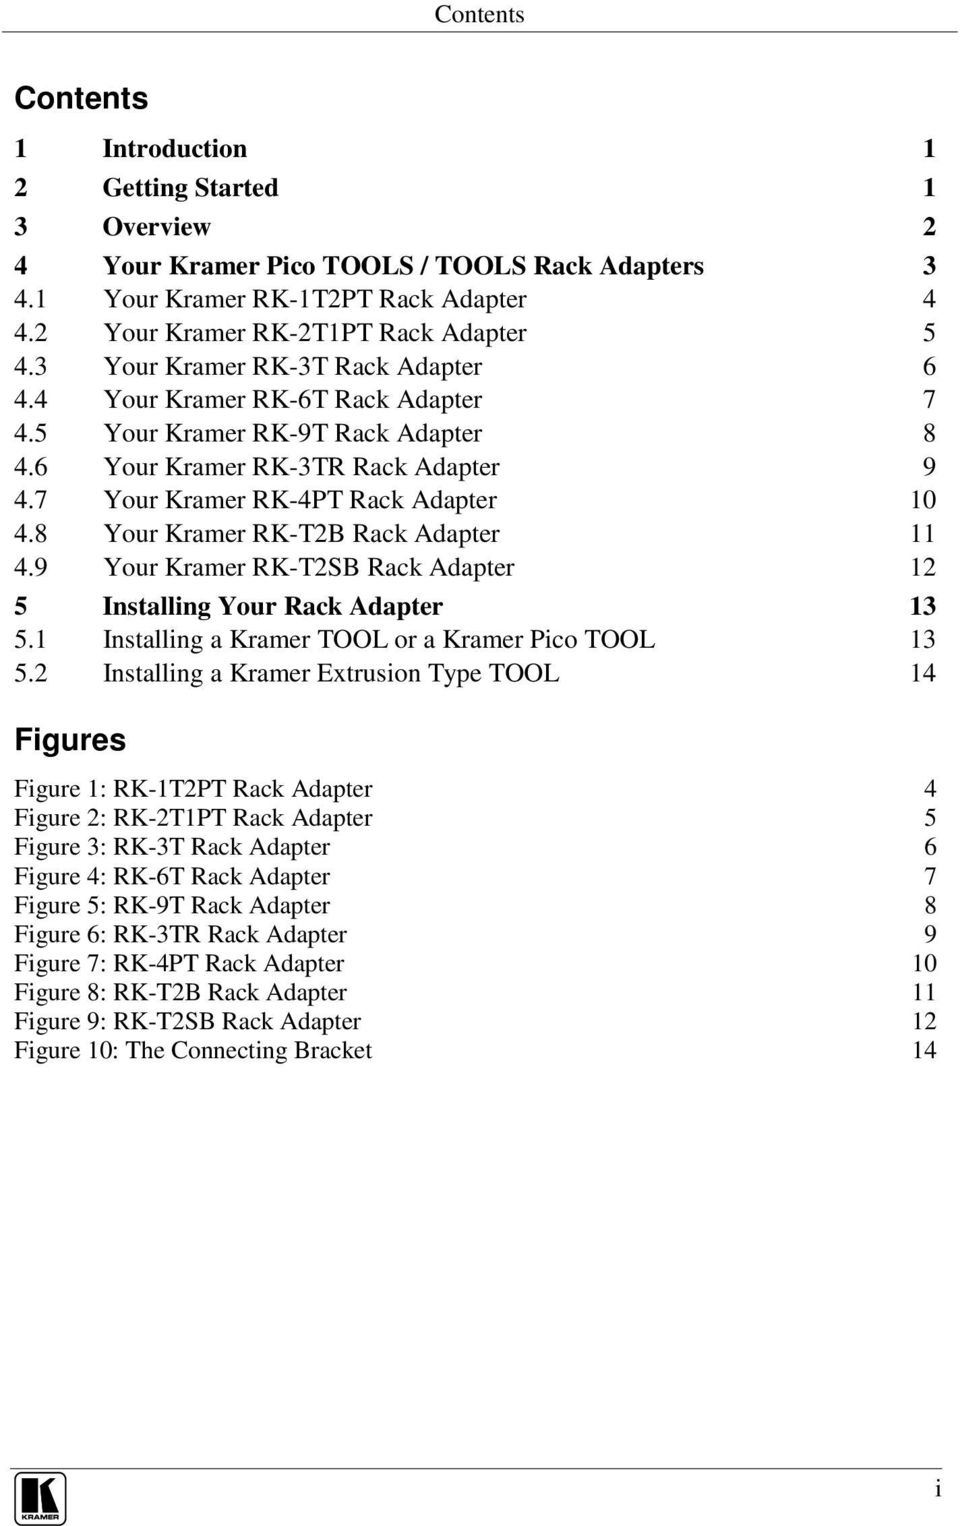 8 Your Kramer RK-T2B Rack Adapter 11 4.9 Your Kramer RK-T2SB Rack Adapter 12 5 Installing Your Rack Adapter 13 5.1 Installing a Kramer TOOL or a Kramer Pico TOOL 13 5.